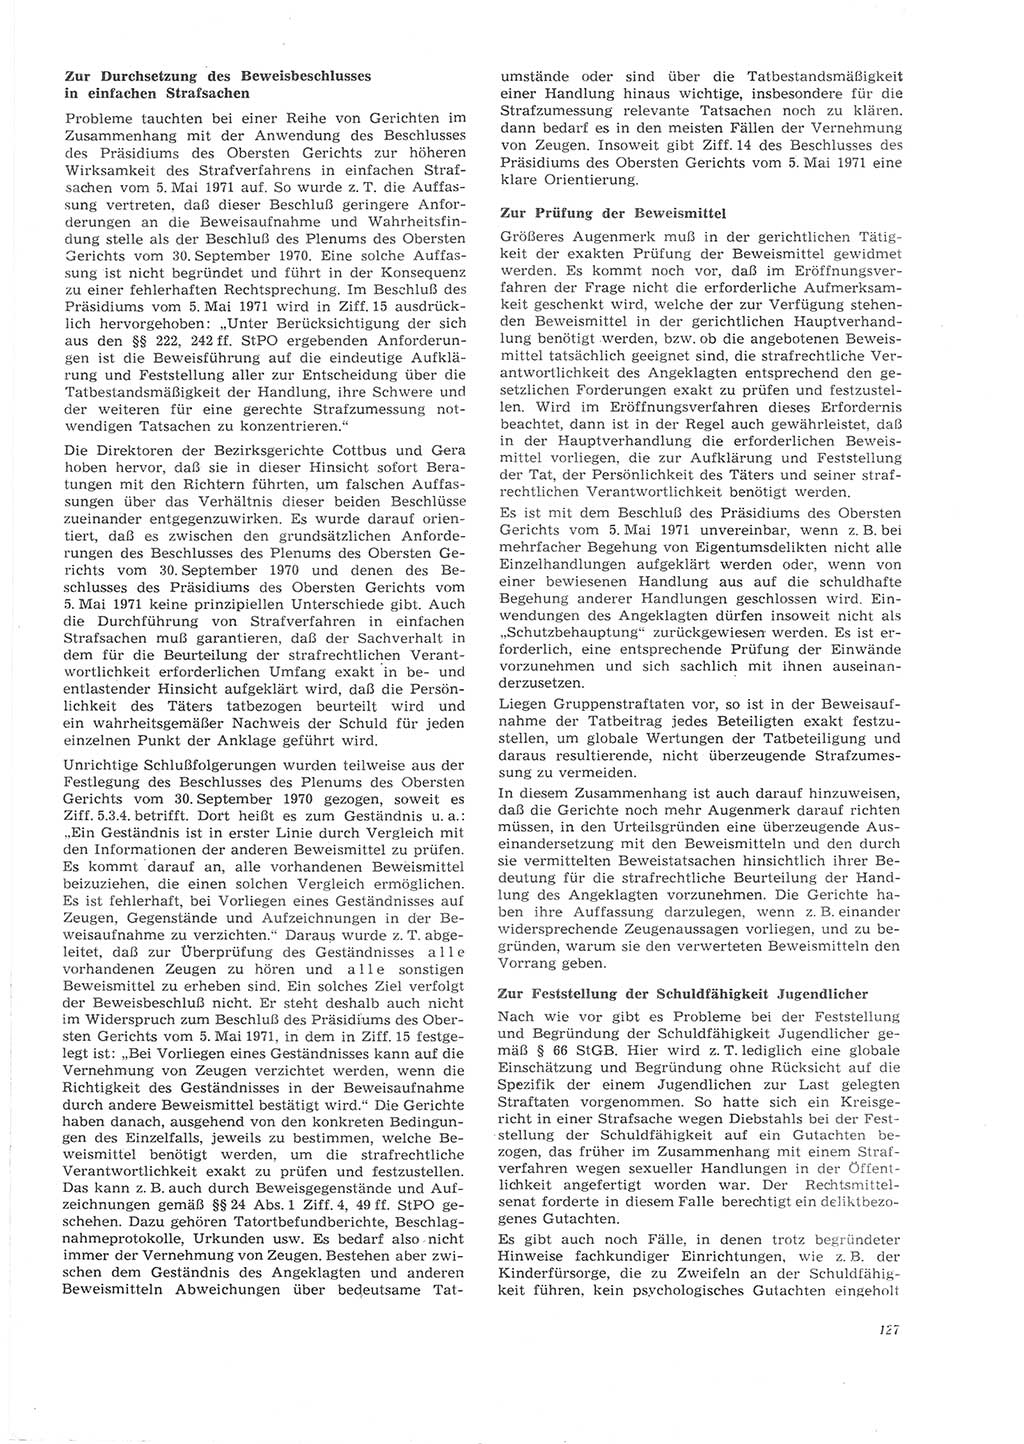 Neue Justiz (NJ), Zeitschrift für Recht und Rechtswissenschaft [Deutsche Demokratische Republik (DDR)], 26. Jahrgang 1972, Seite 127 (NJ DDR 1972, S. 127)